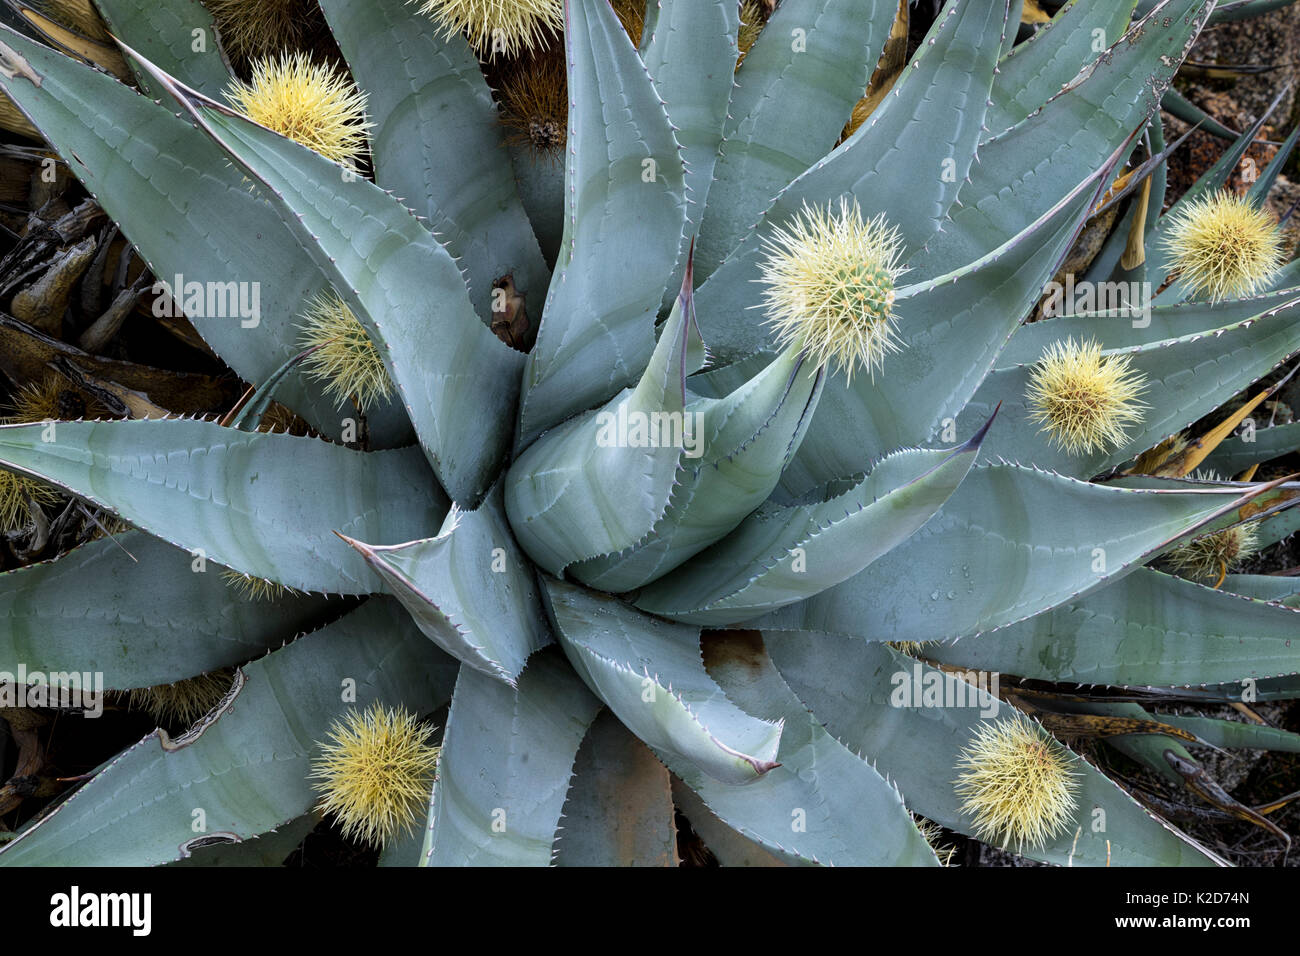 Wüste Agave (Agave deserti) hat aufgespießt eine Kugel von Stacheln Schuppen durch benachbarte Cholla Cactus (Cylindropuntia Bigelovii) Anza-Borrego State Park, Kalifornien, USA März Stockfoto